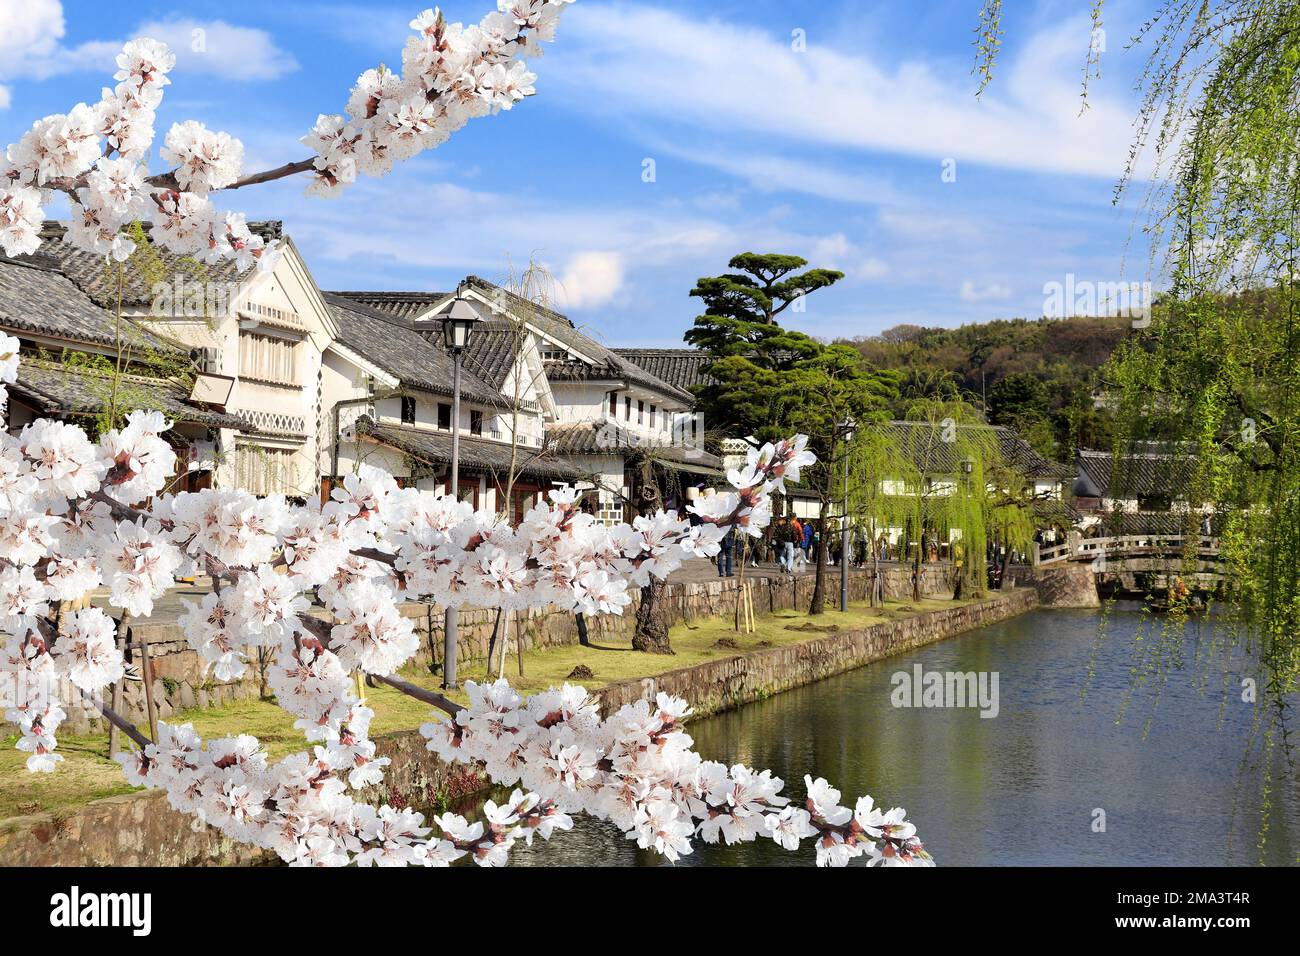 Maisons anciennes et fleurs de sakura, canal de Kurashiki dans le quartier de Bikan, ville de Kurashiki, Japon. Festival japonais de hanami - temps où les gens aiment sakura blos Banque D'Images